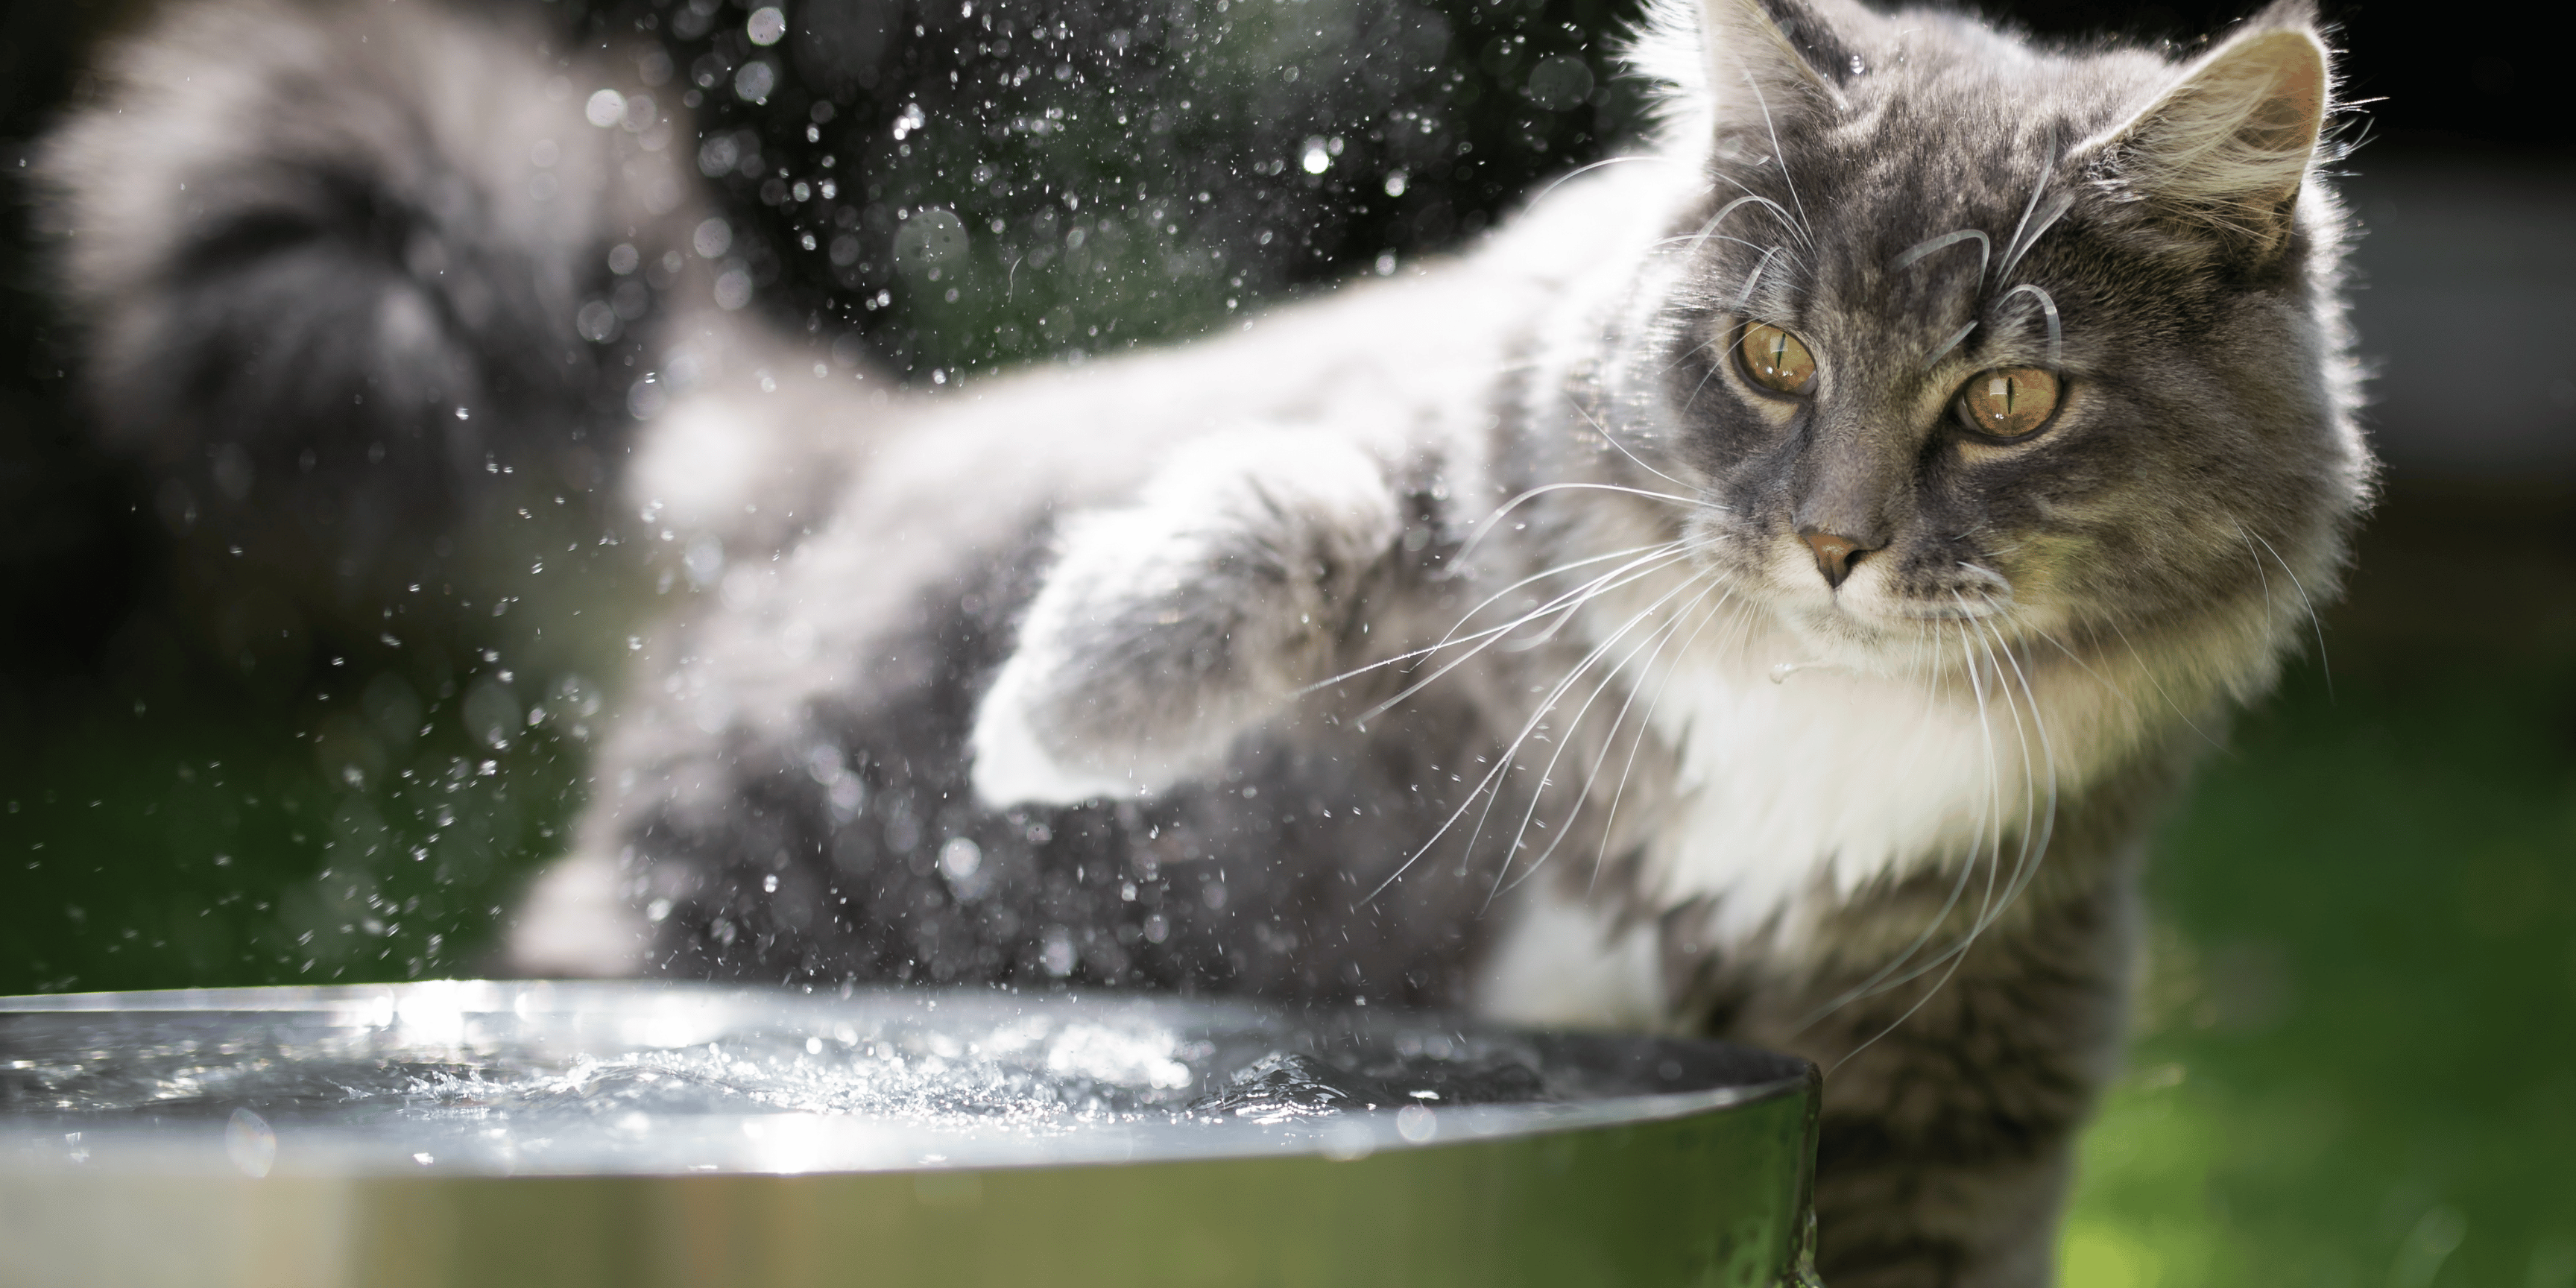 come si sentono davvero i gatti acqua